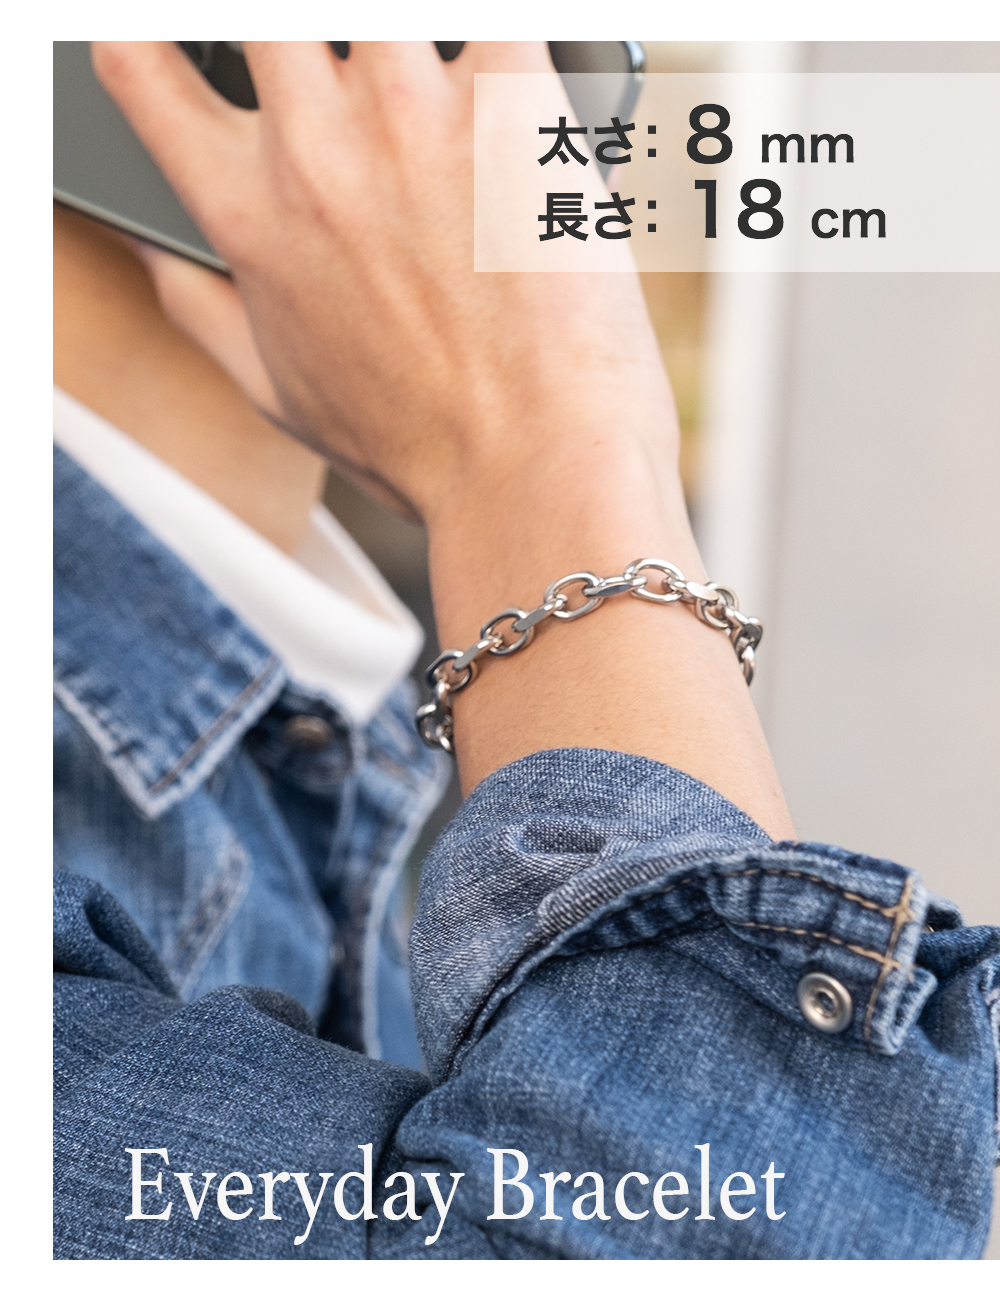 マンテル ブレスレット 韓国 18cm メンズ レディース 通販